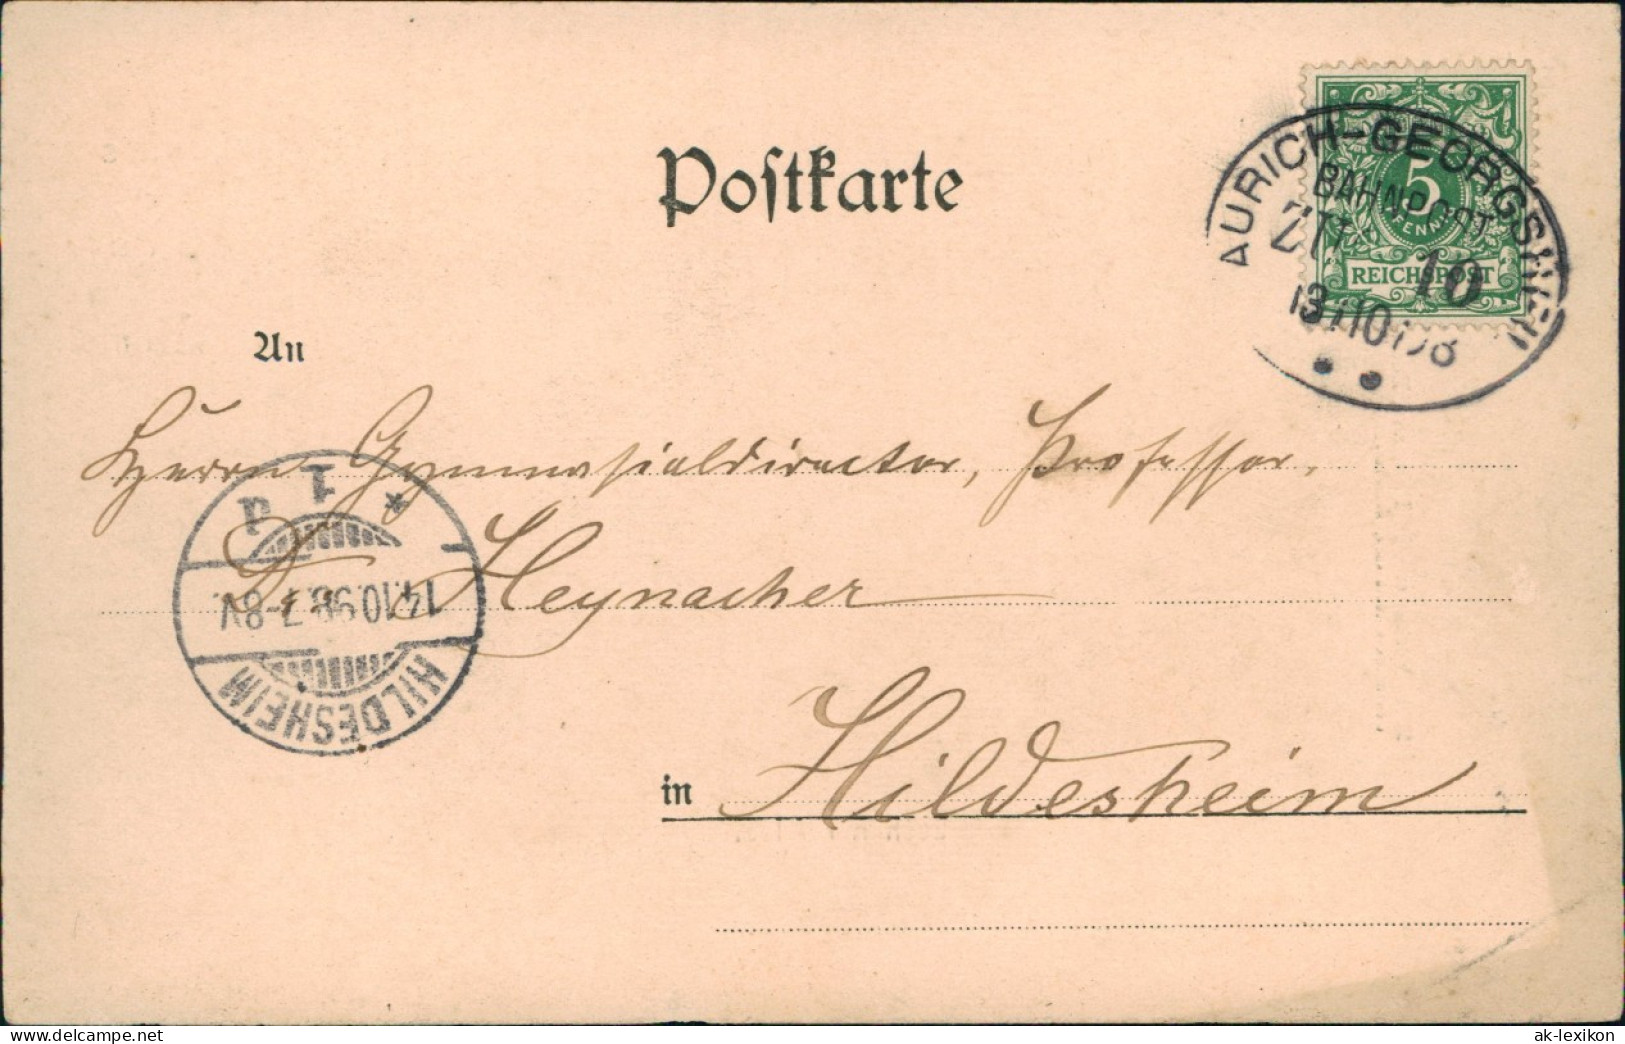 Ansichtskarte Aurich-Leer Ostfriesland Eschener Allee 1898  Gel Bahnpoststempel - Aurich